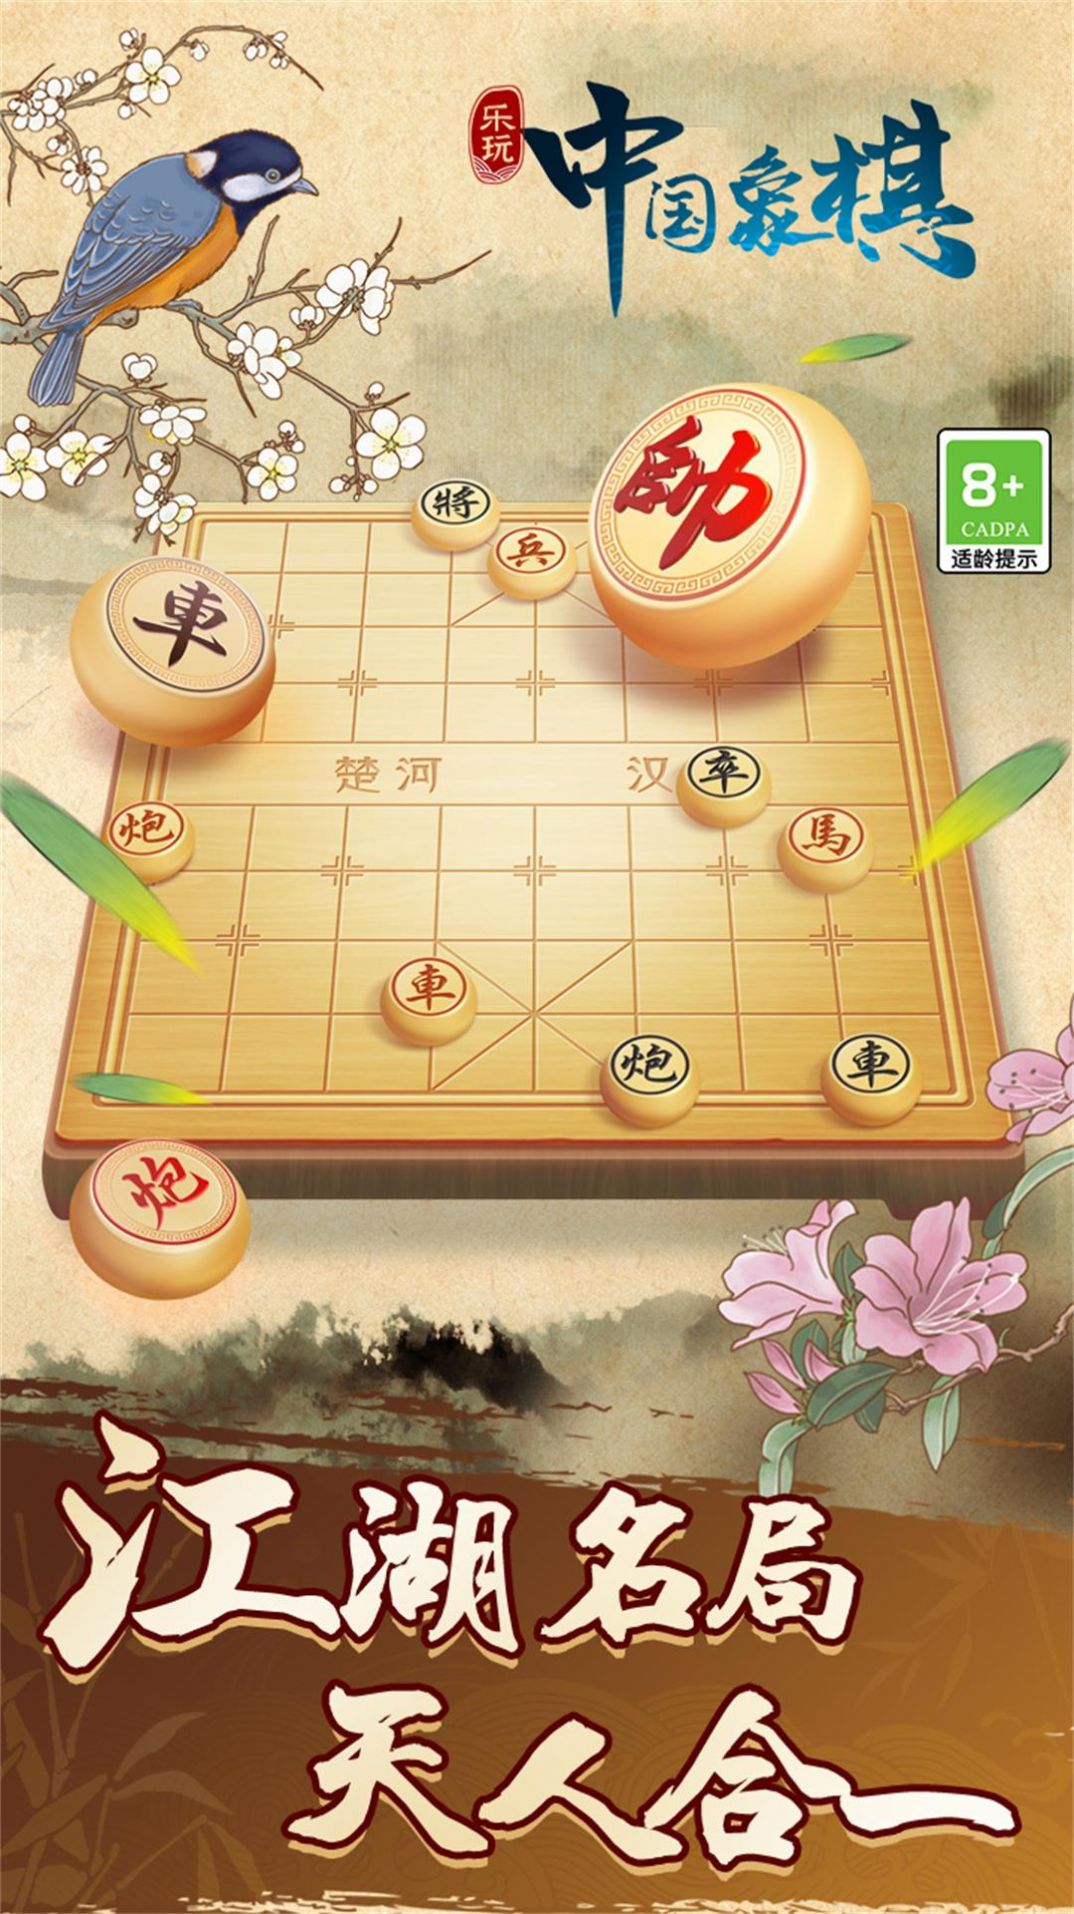 中国象棋巅峰博弈游戏官方版图片1